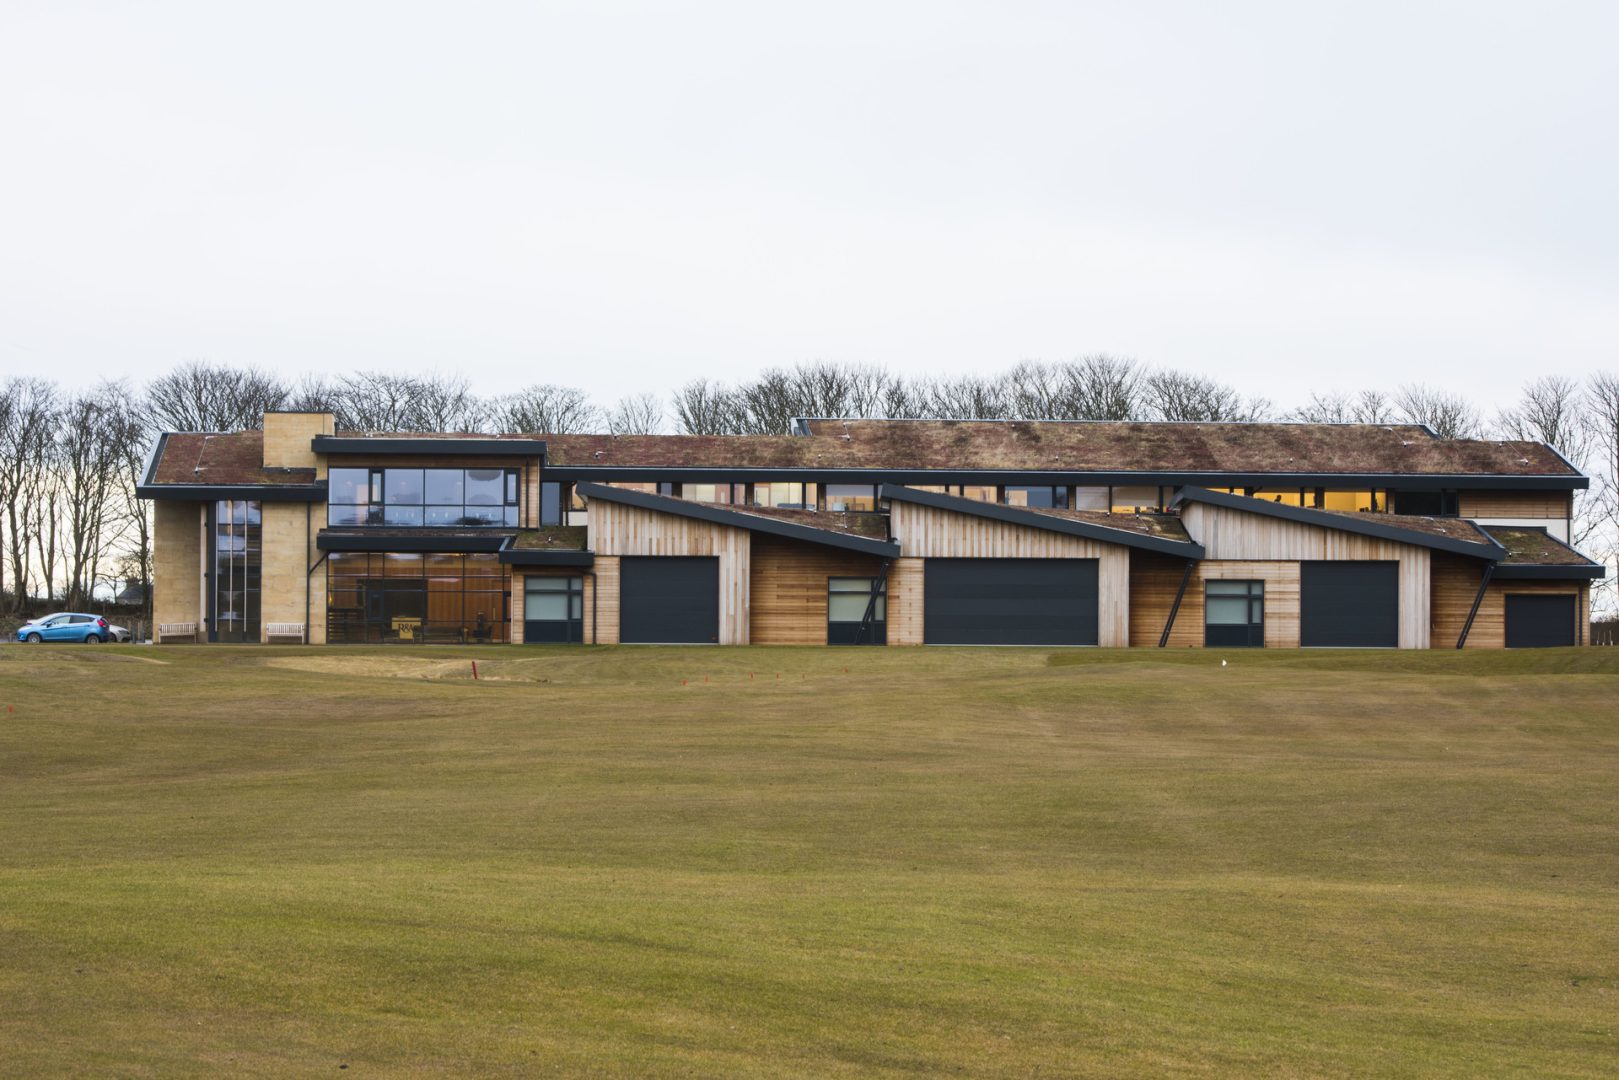 Portoni industriali per il campo da golf di St. Andrews in Scozia